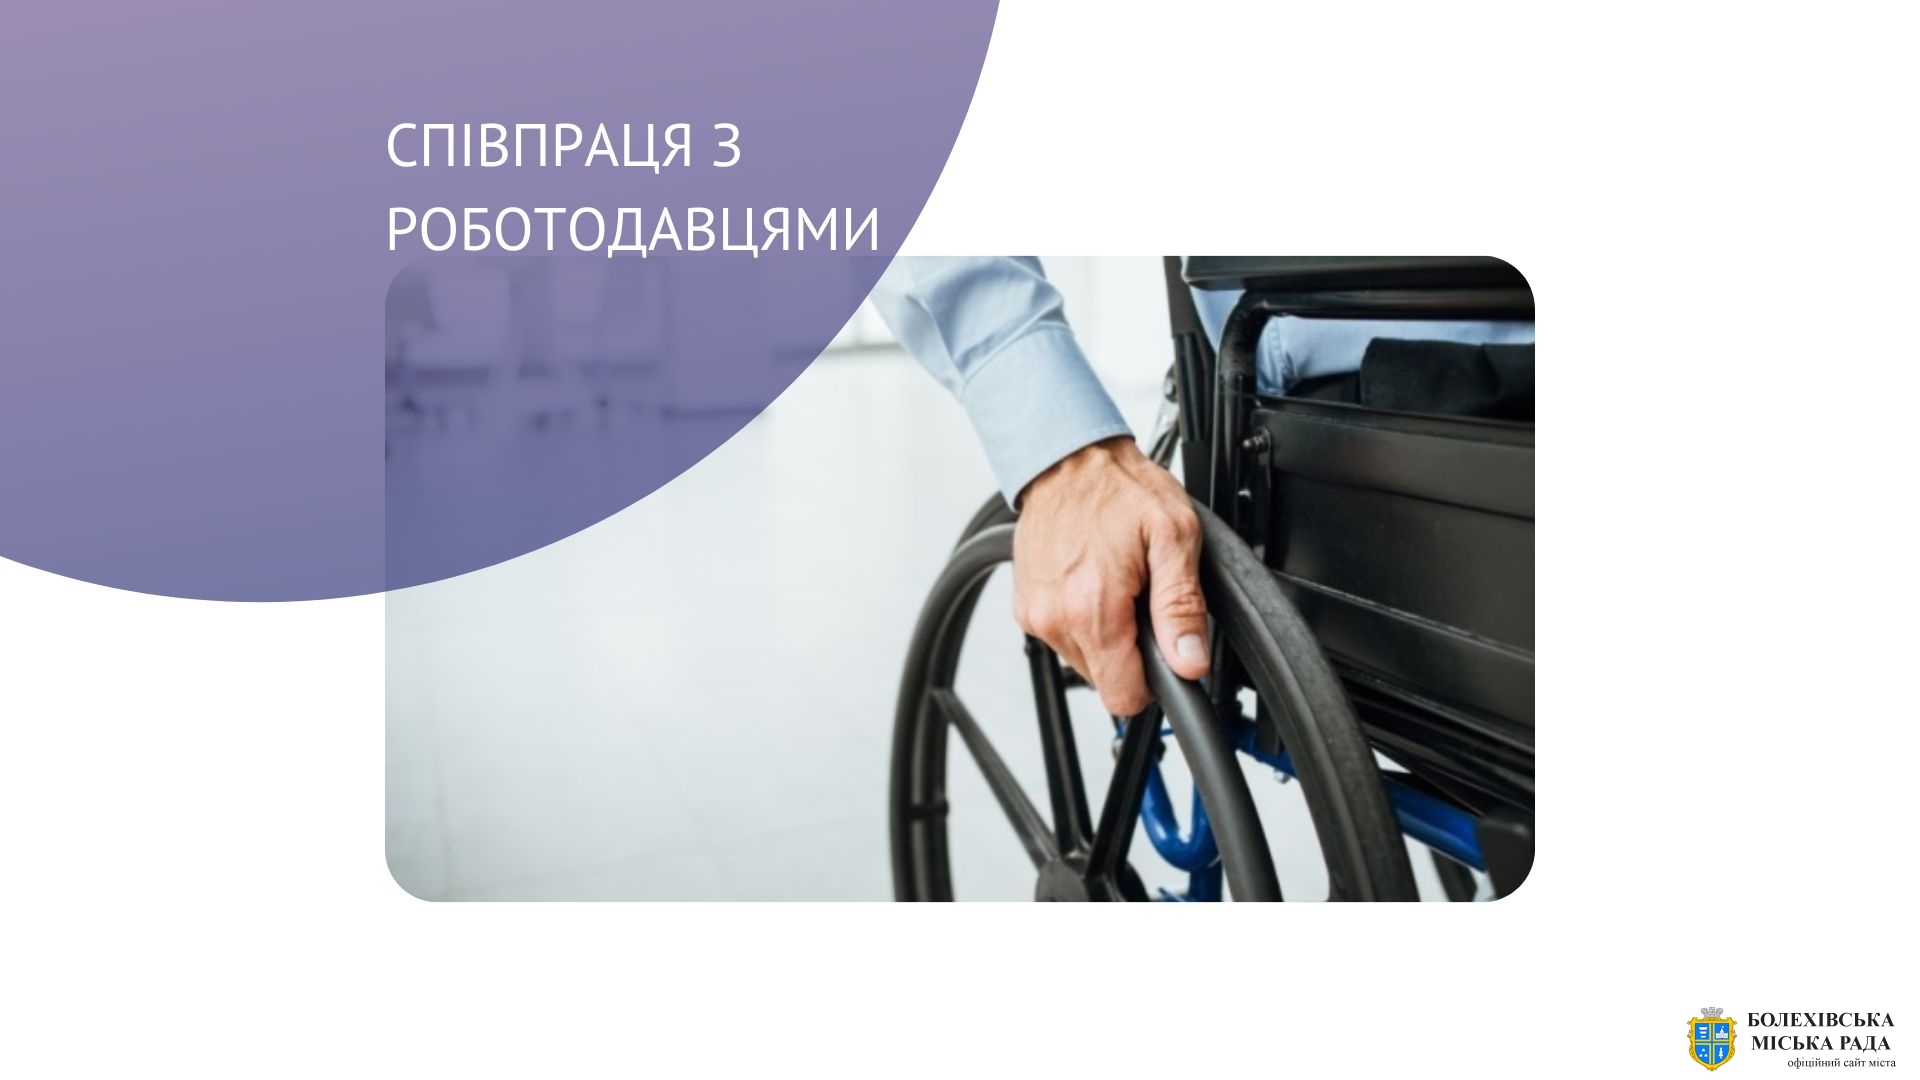 Отримайте компенсацію за облаштування робочих місць працевлаштованих осіб з інвалідністю